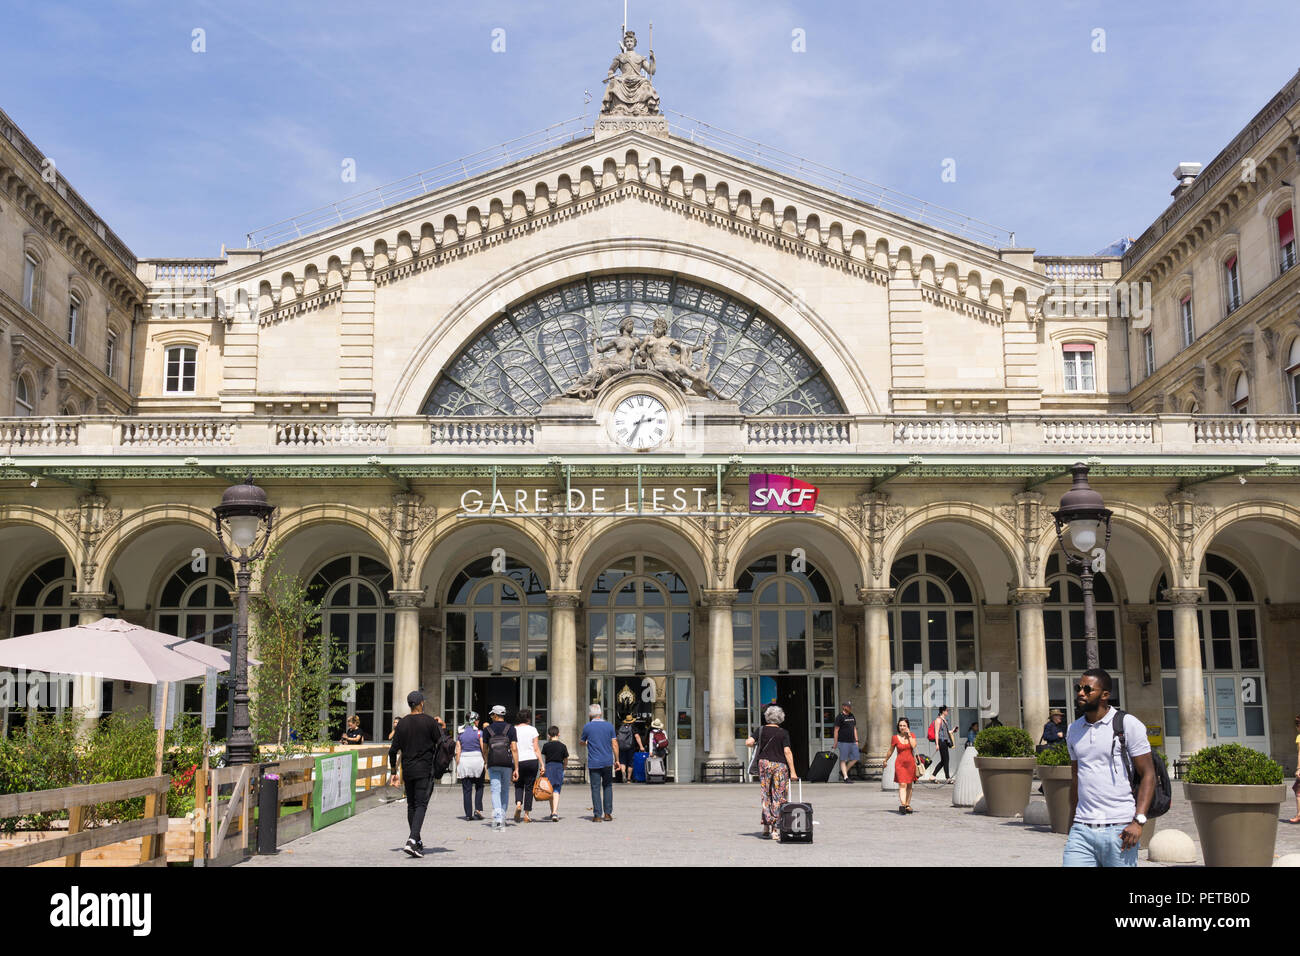 Paris Gare de l'Est - Exterior of train station Gare de l'Est in Paris, France, Europe. Stock Photo